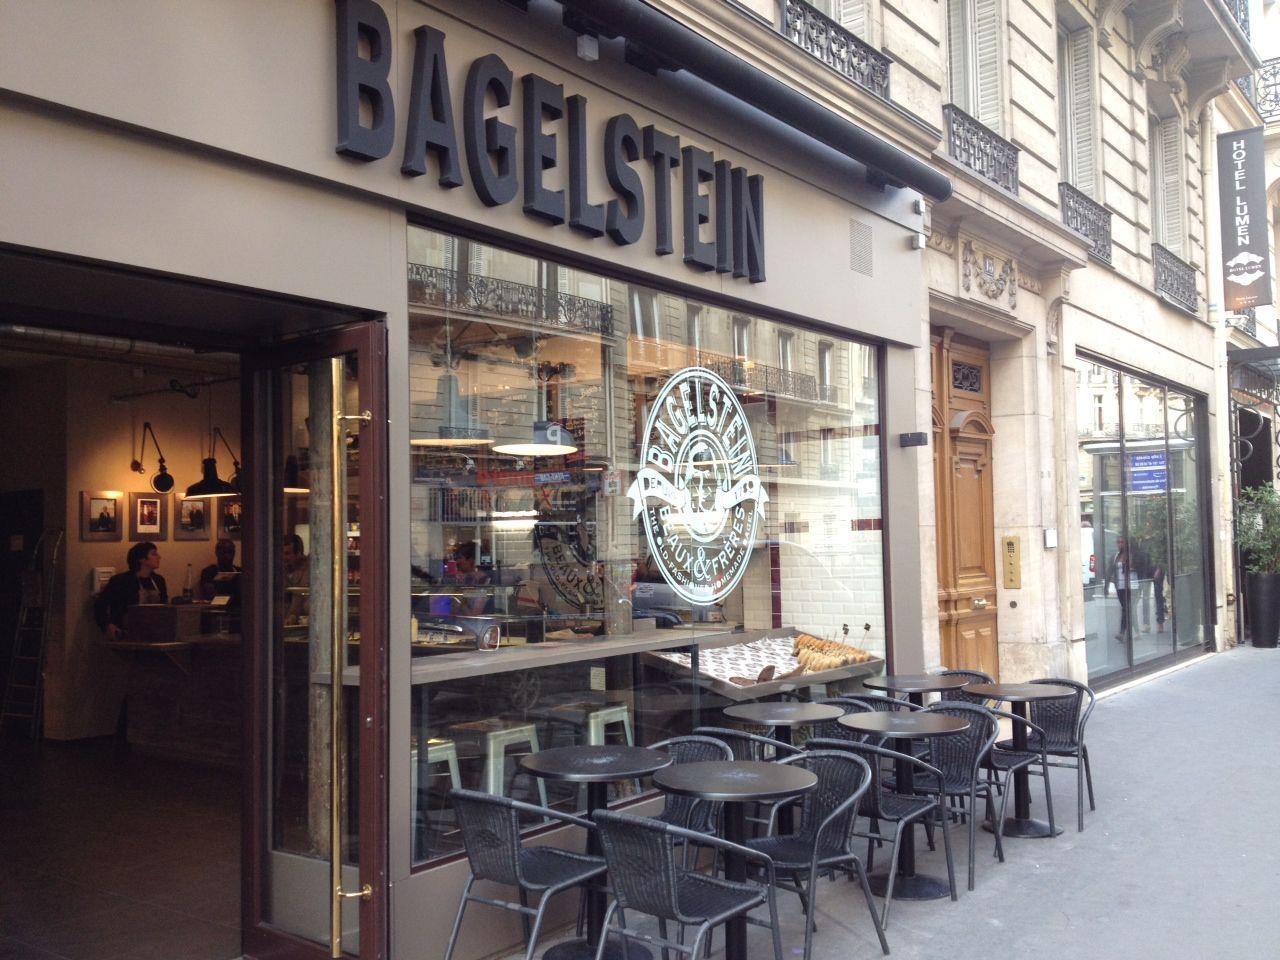 Bagelstein 